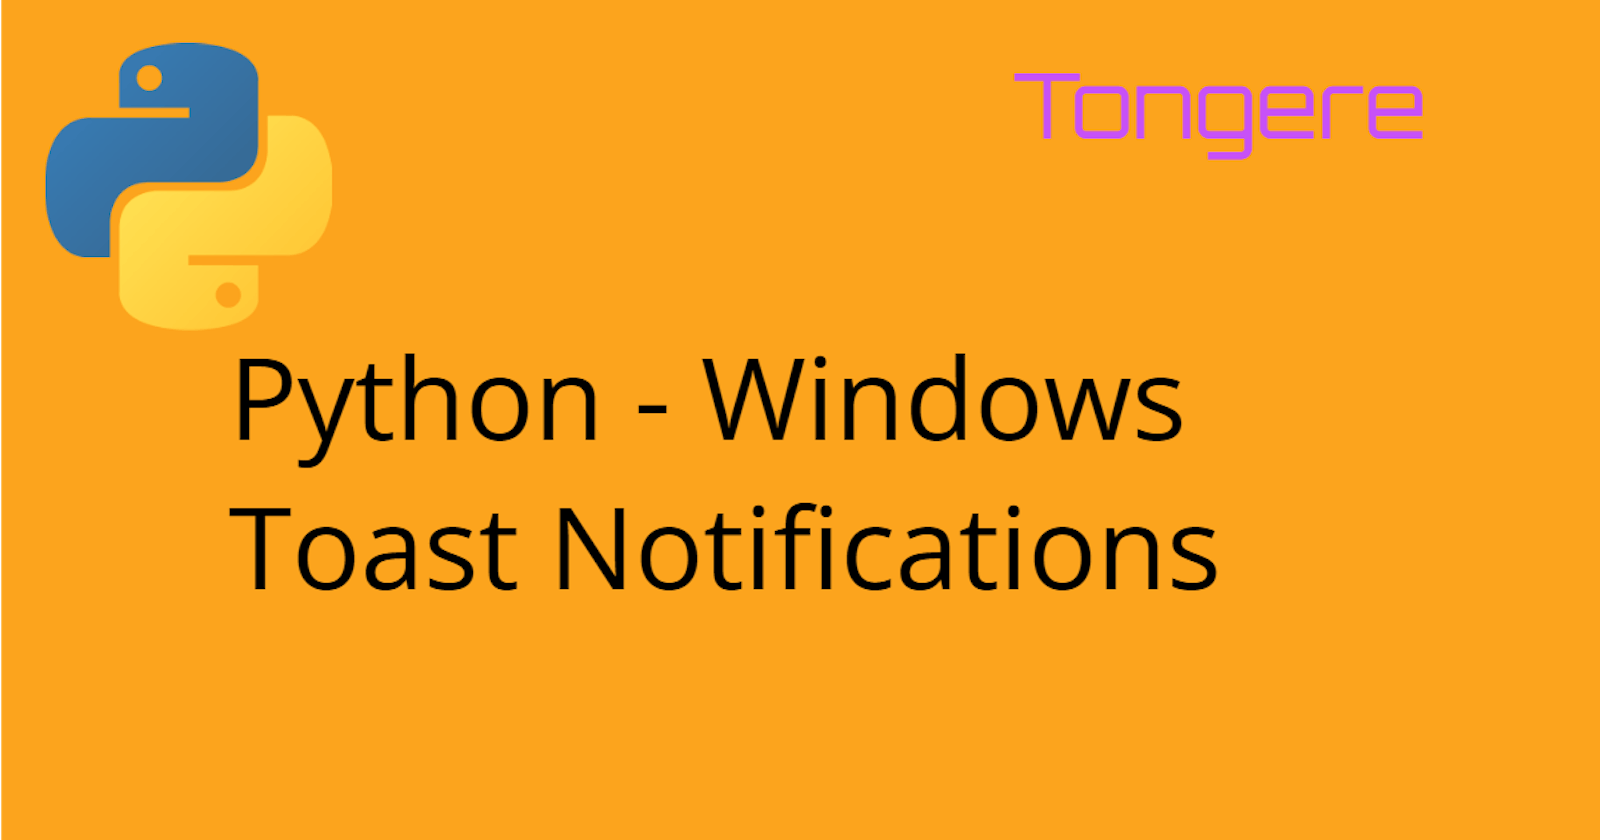 Python: Windows Toast Notifications